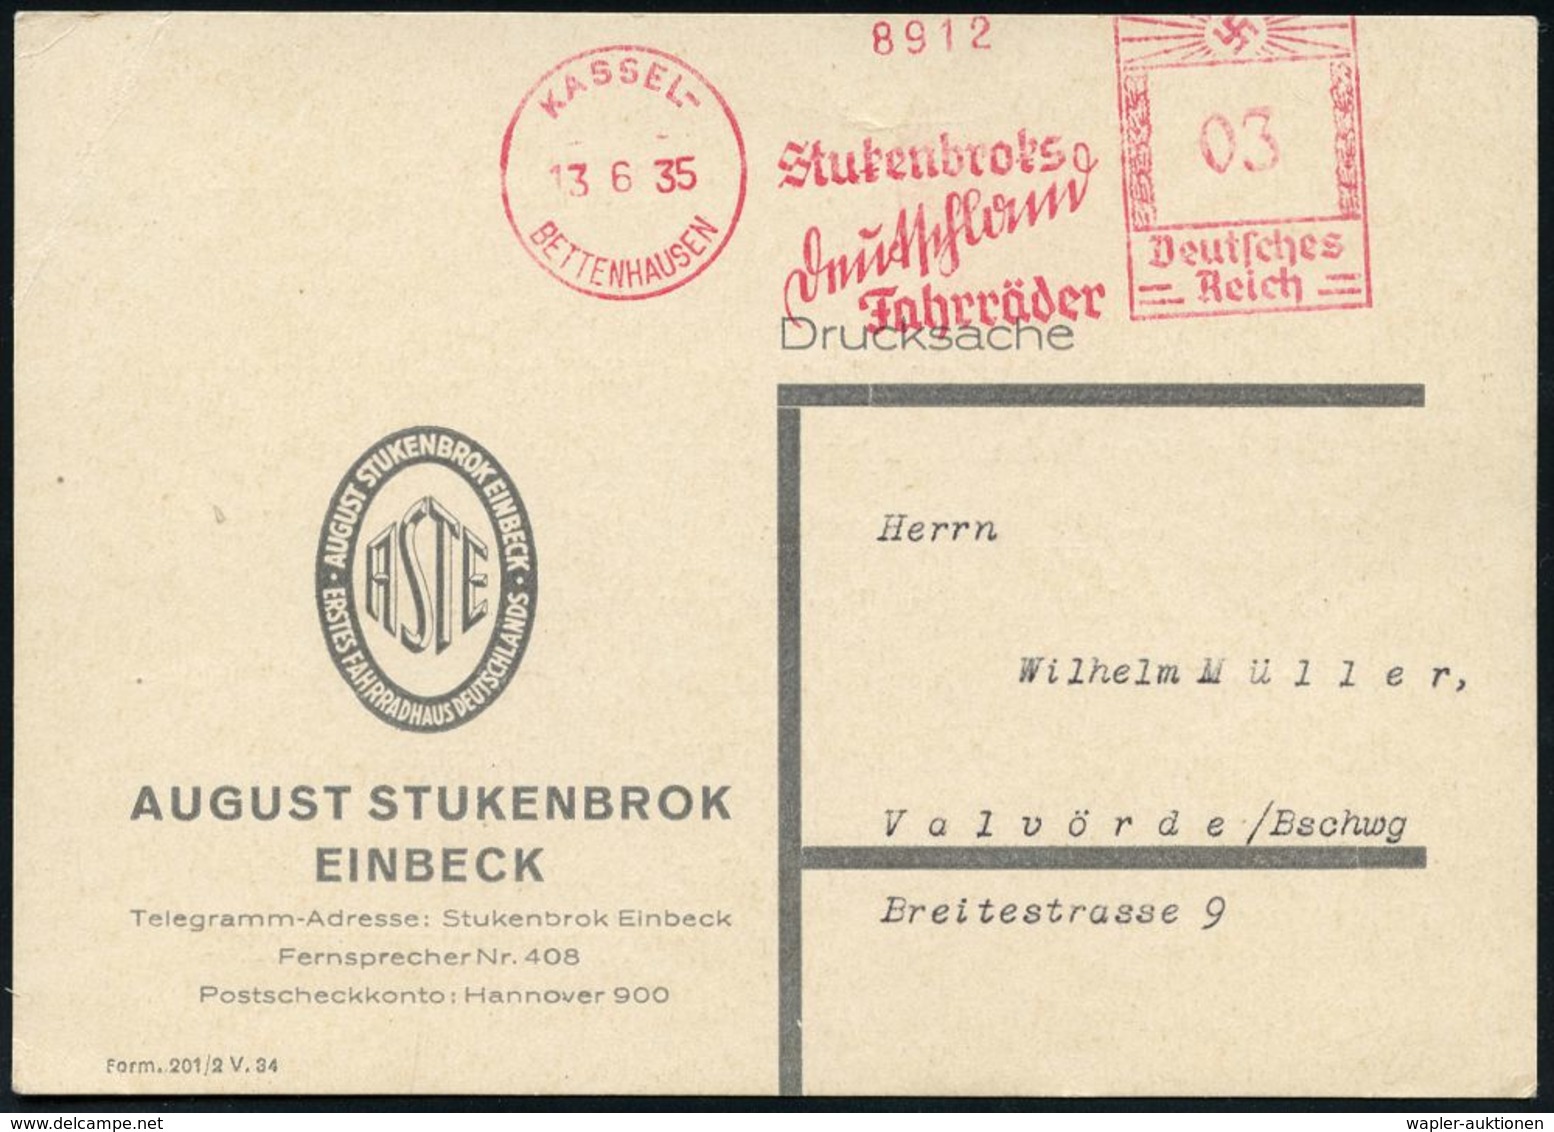 F A H R R A D  / INDUSTRIE & ZUBEHÖR : KASSEL-/ BETTENHAUSEN/ Stukenbroks/ Deutschland/ Fahrräder 1935 (13.6.) Sehr Selt - Autres (Terre)